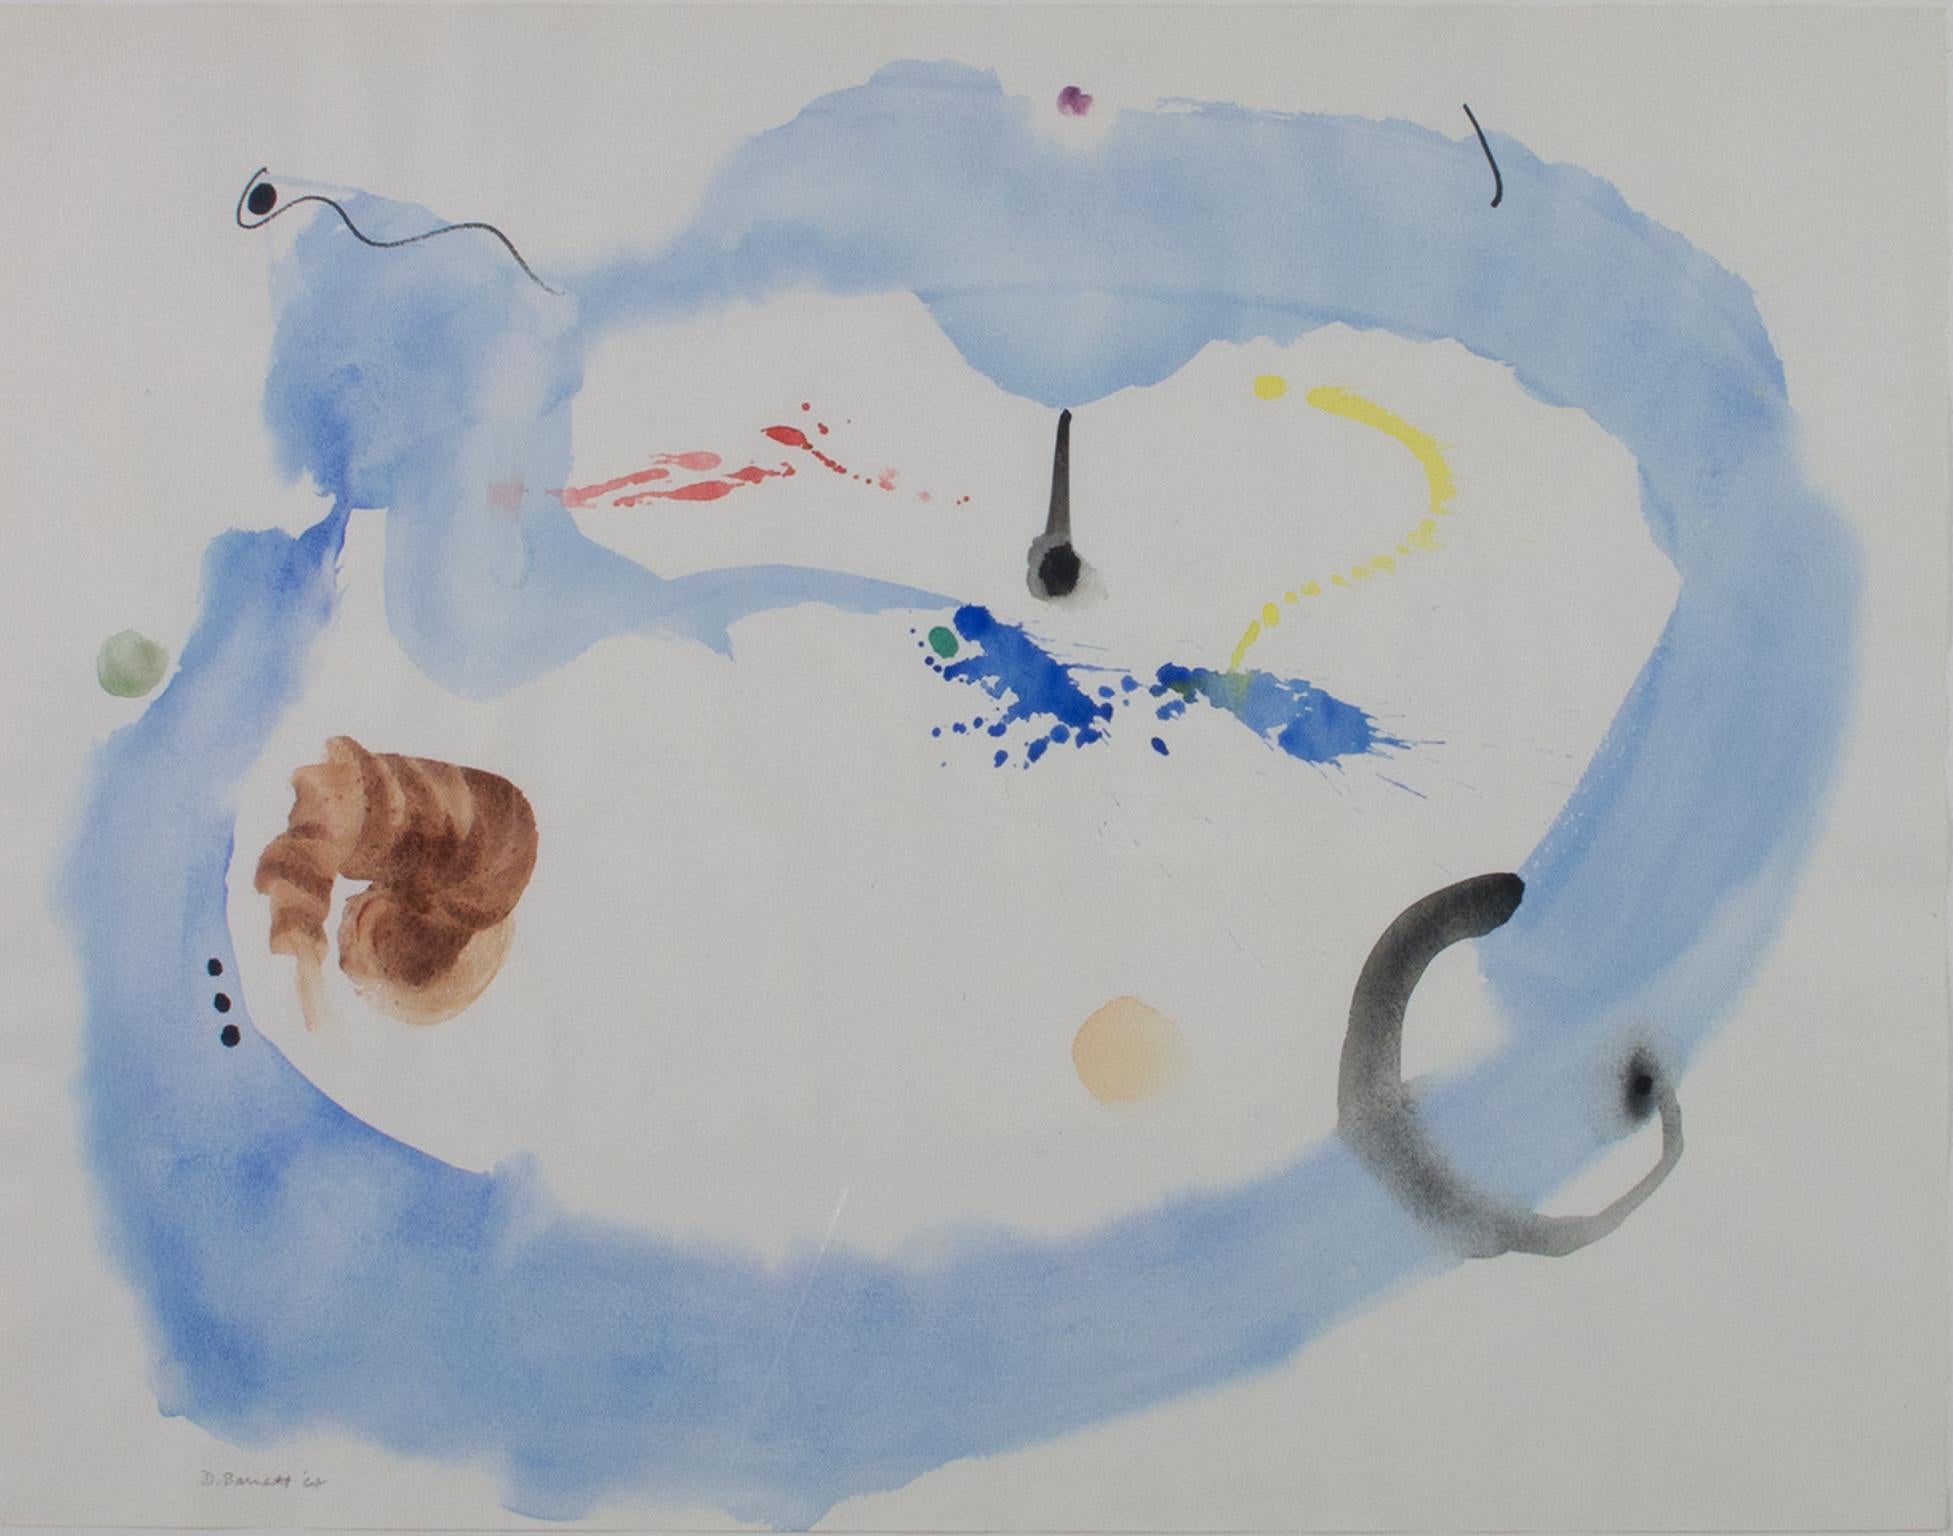 "Constellation with Blue Cloud" ist ein Original-Aquarell auf Papier von David Barnett, signiert und datiert unten links. Das Werk ist abstrakt; ein großer blauer Ring mit schwankenden Rändern umkreist rote, gelbe, braune und schwarze Flecken.